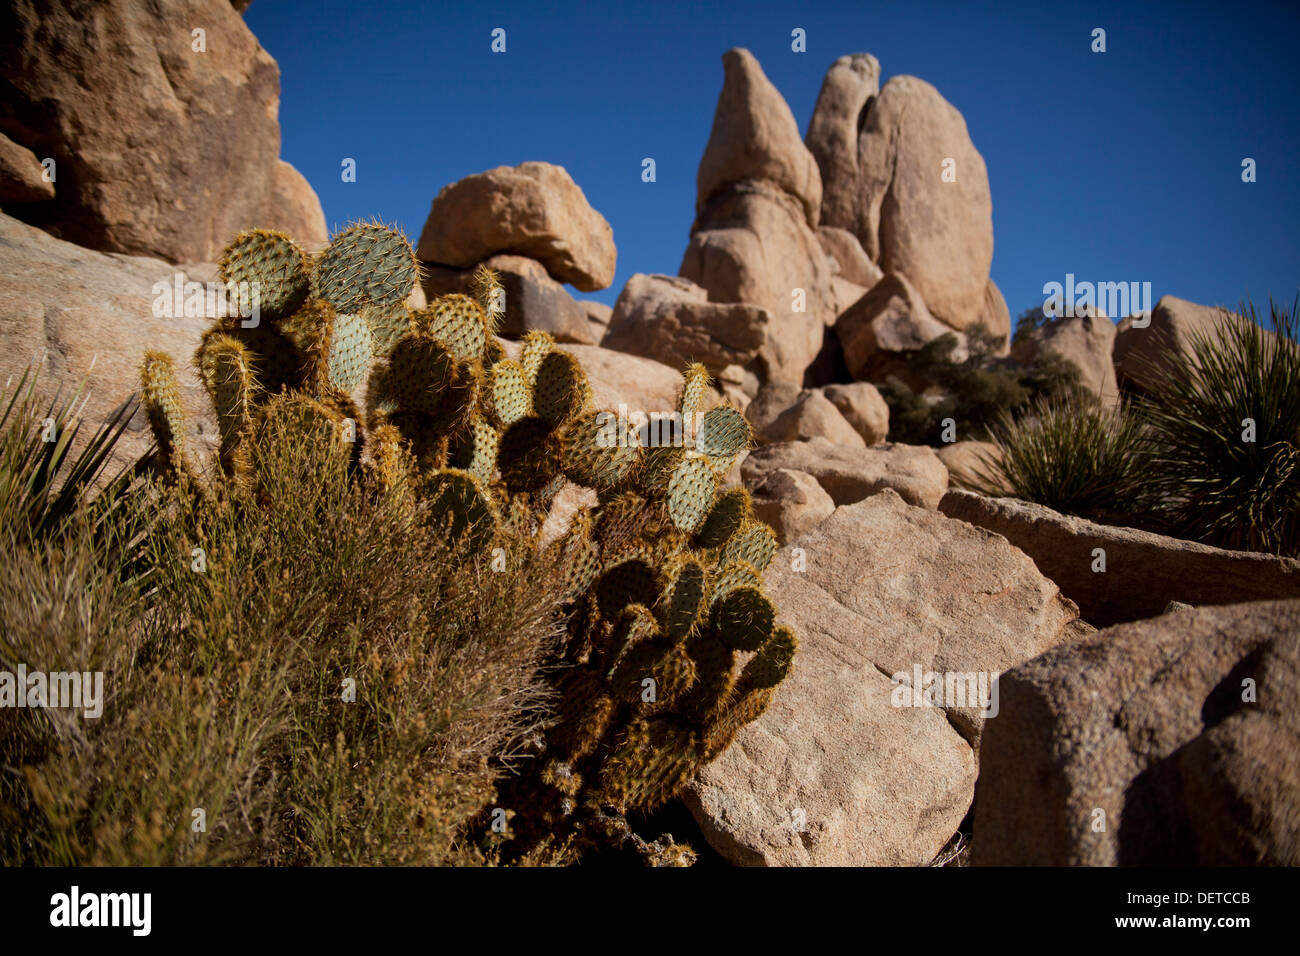 Los cactus Opuntia visto en el desierto de Mojave Joshua Tree National Park en California, EE.UU. Foto de stock